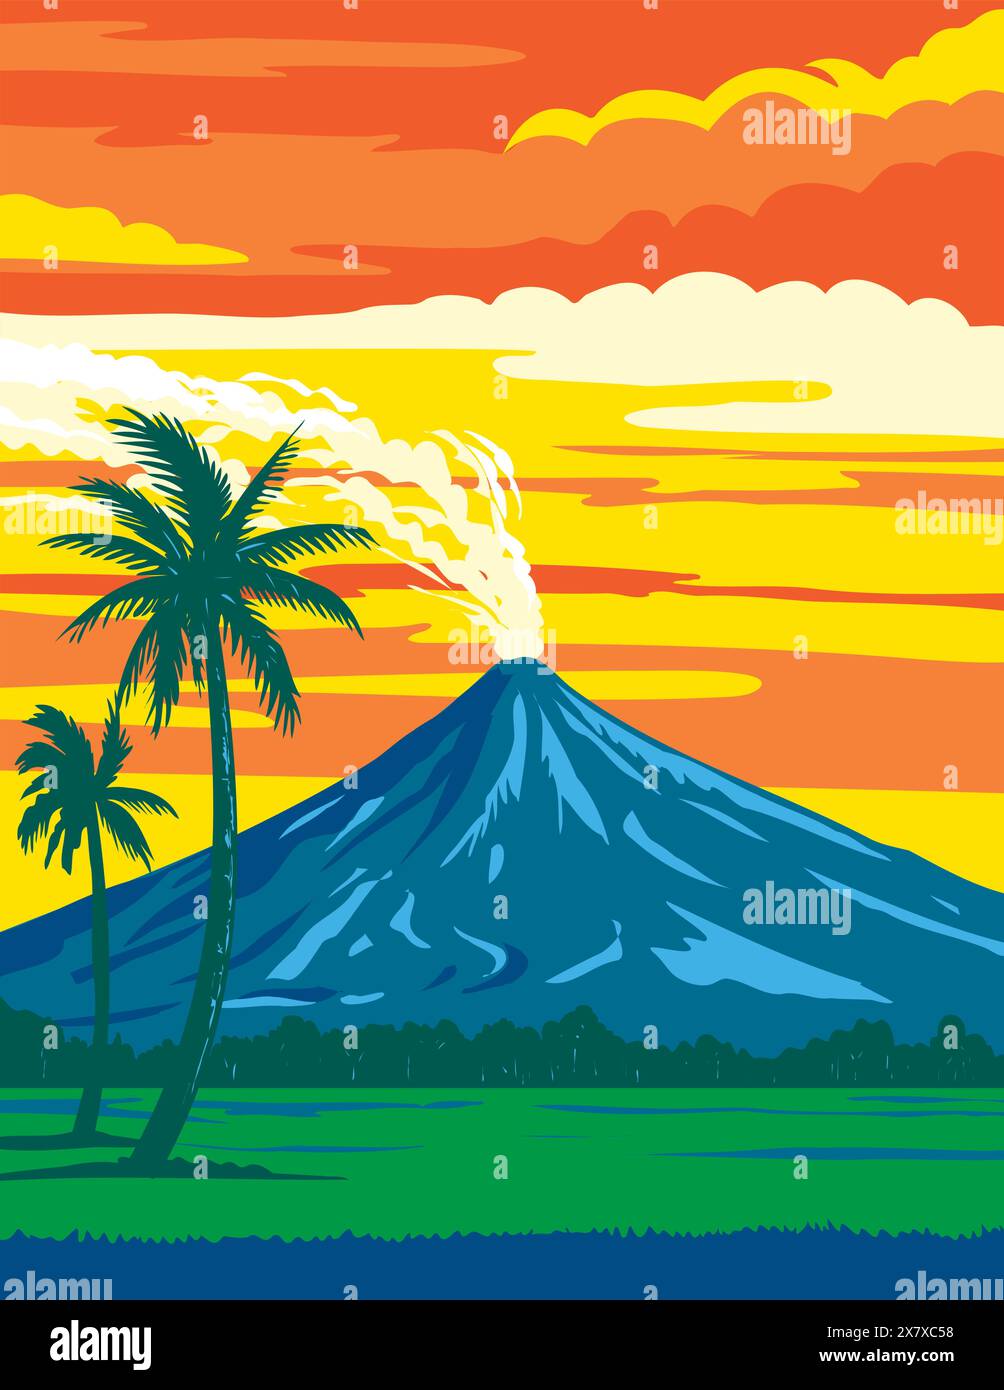 Poster art WPA del Parco naturale del vulcano Mayon situato nella regione di Bicol, nel sud-est dell'isola di Luzon nelle Filippine, realizzato nell'amministrazione dei progetti in corso di lavorazione o. Illustrazione Vettoriale